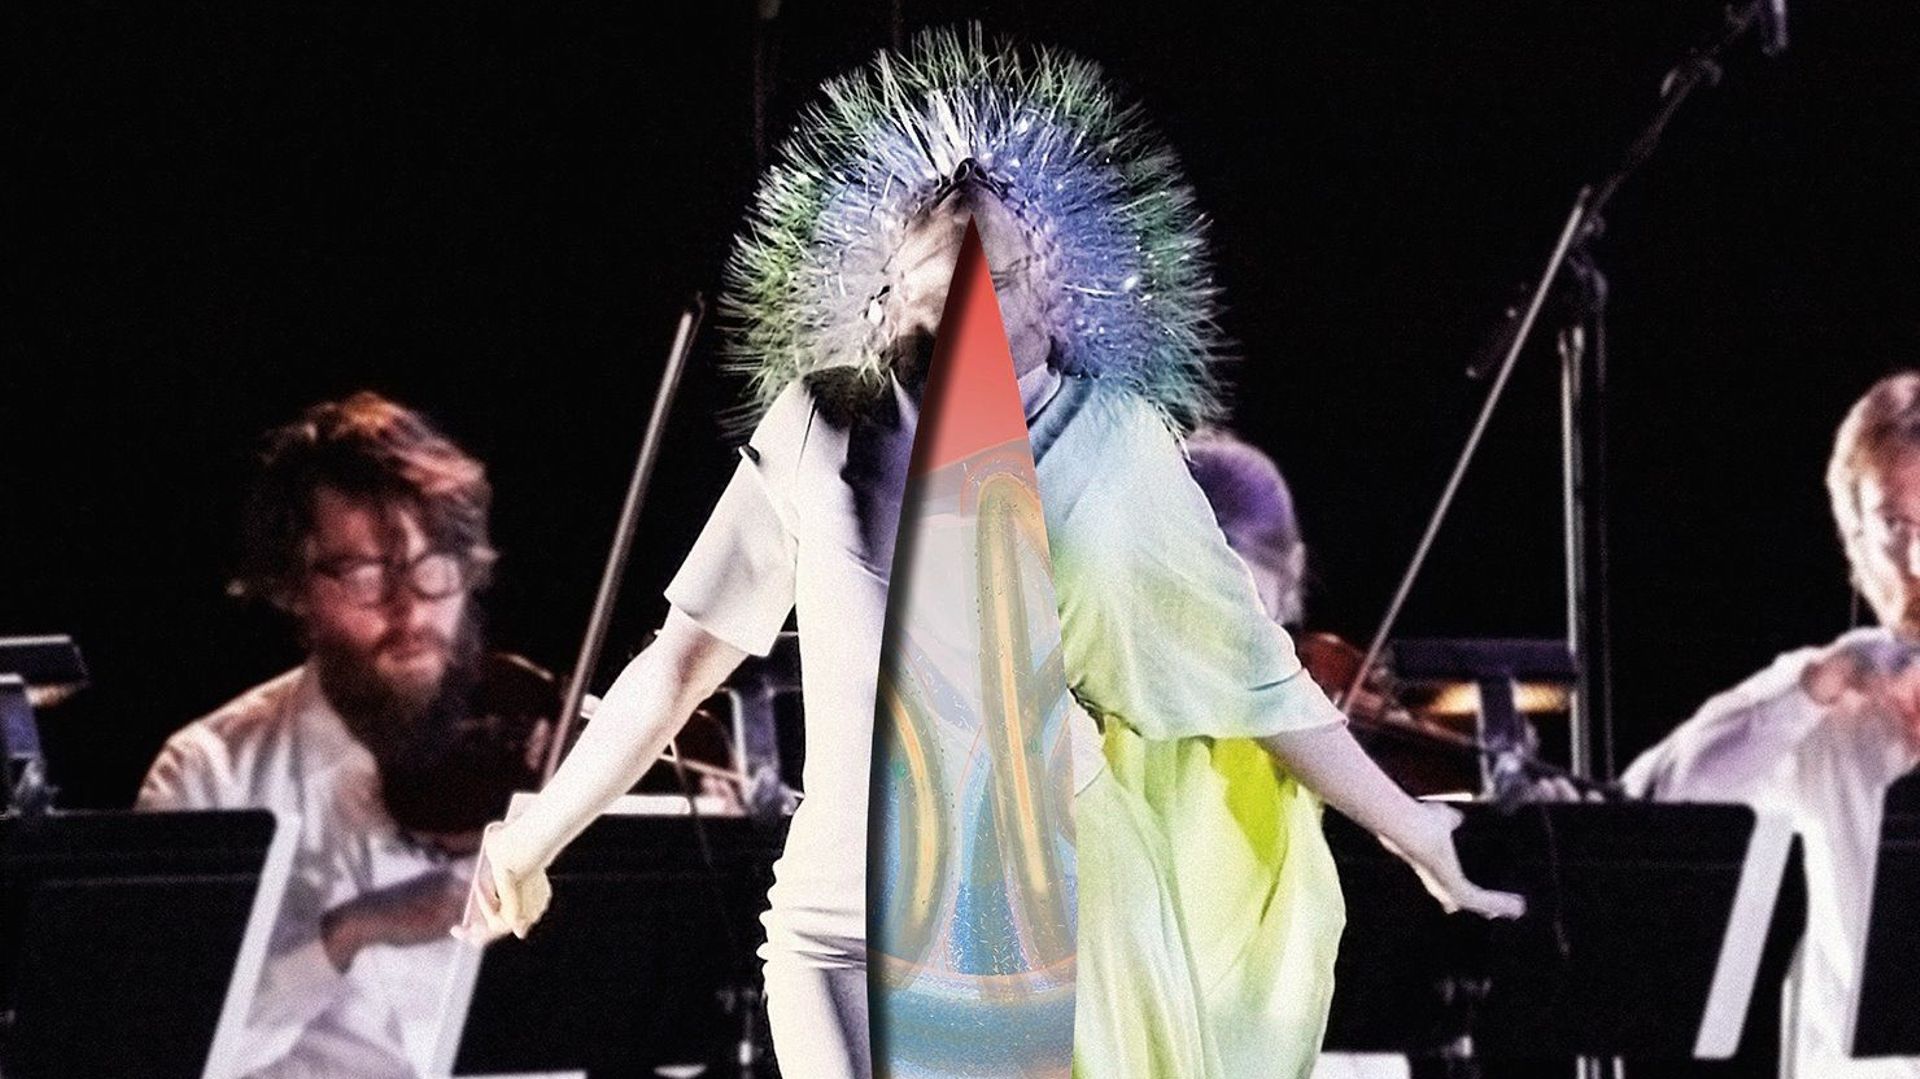 Björk ressort "Vulnicura" en version acoustique